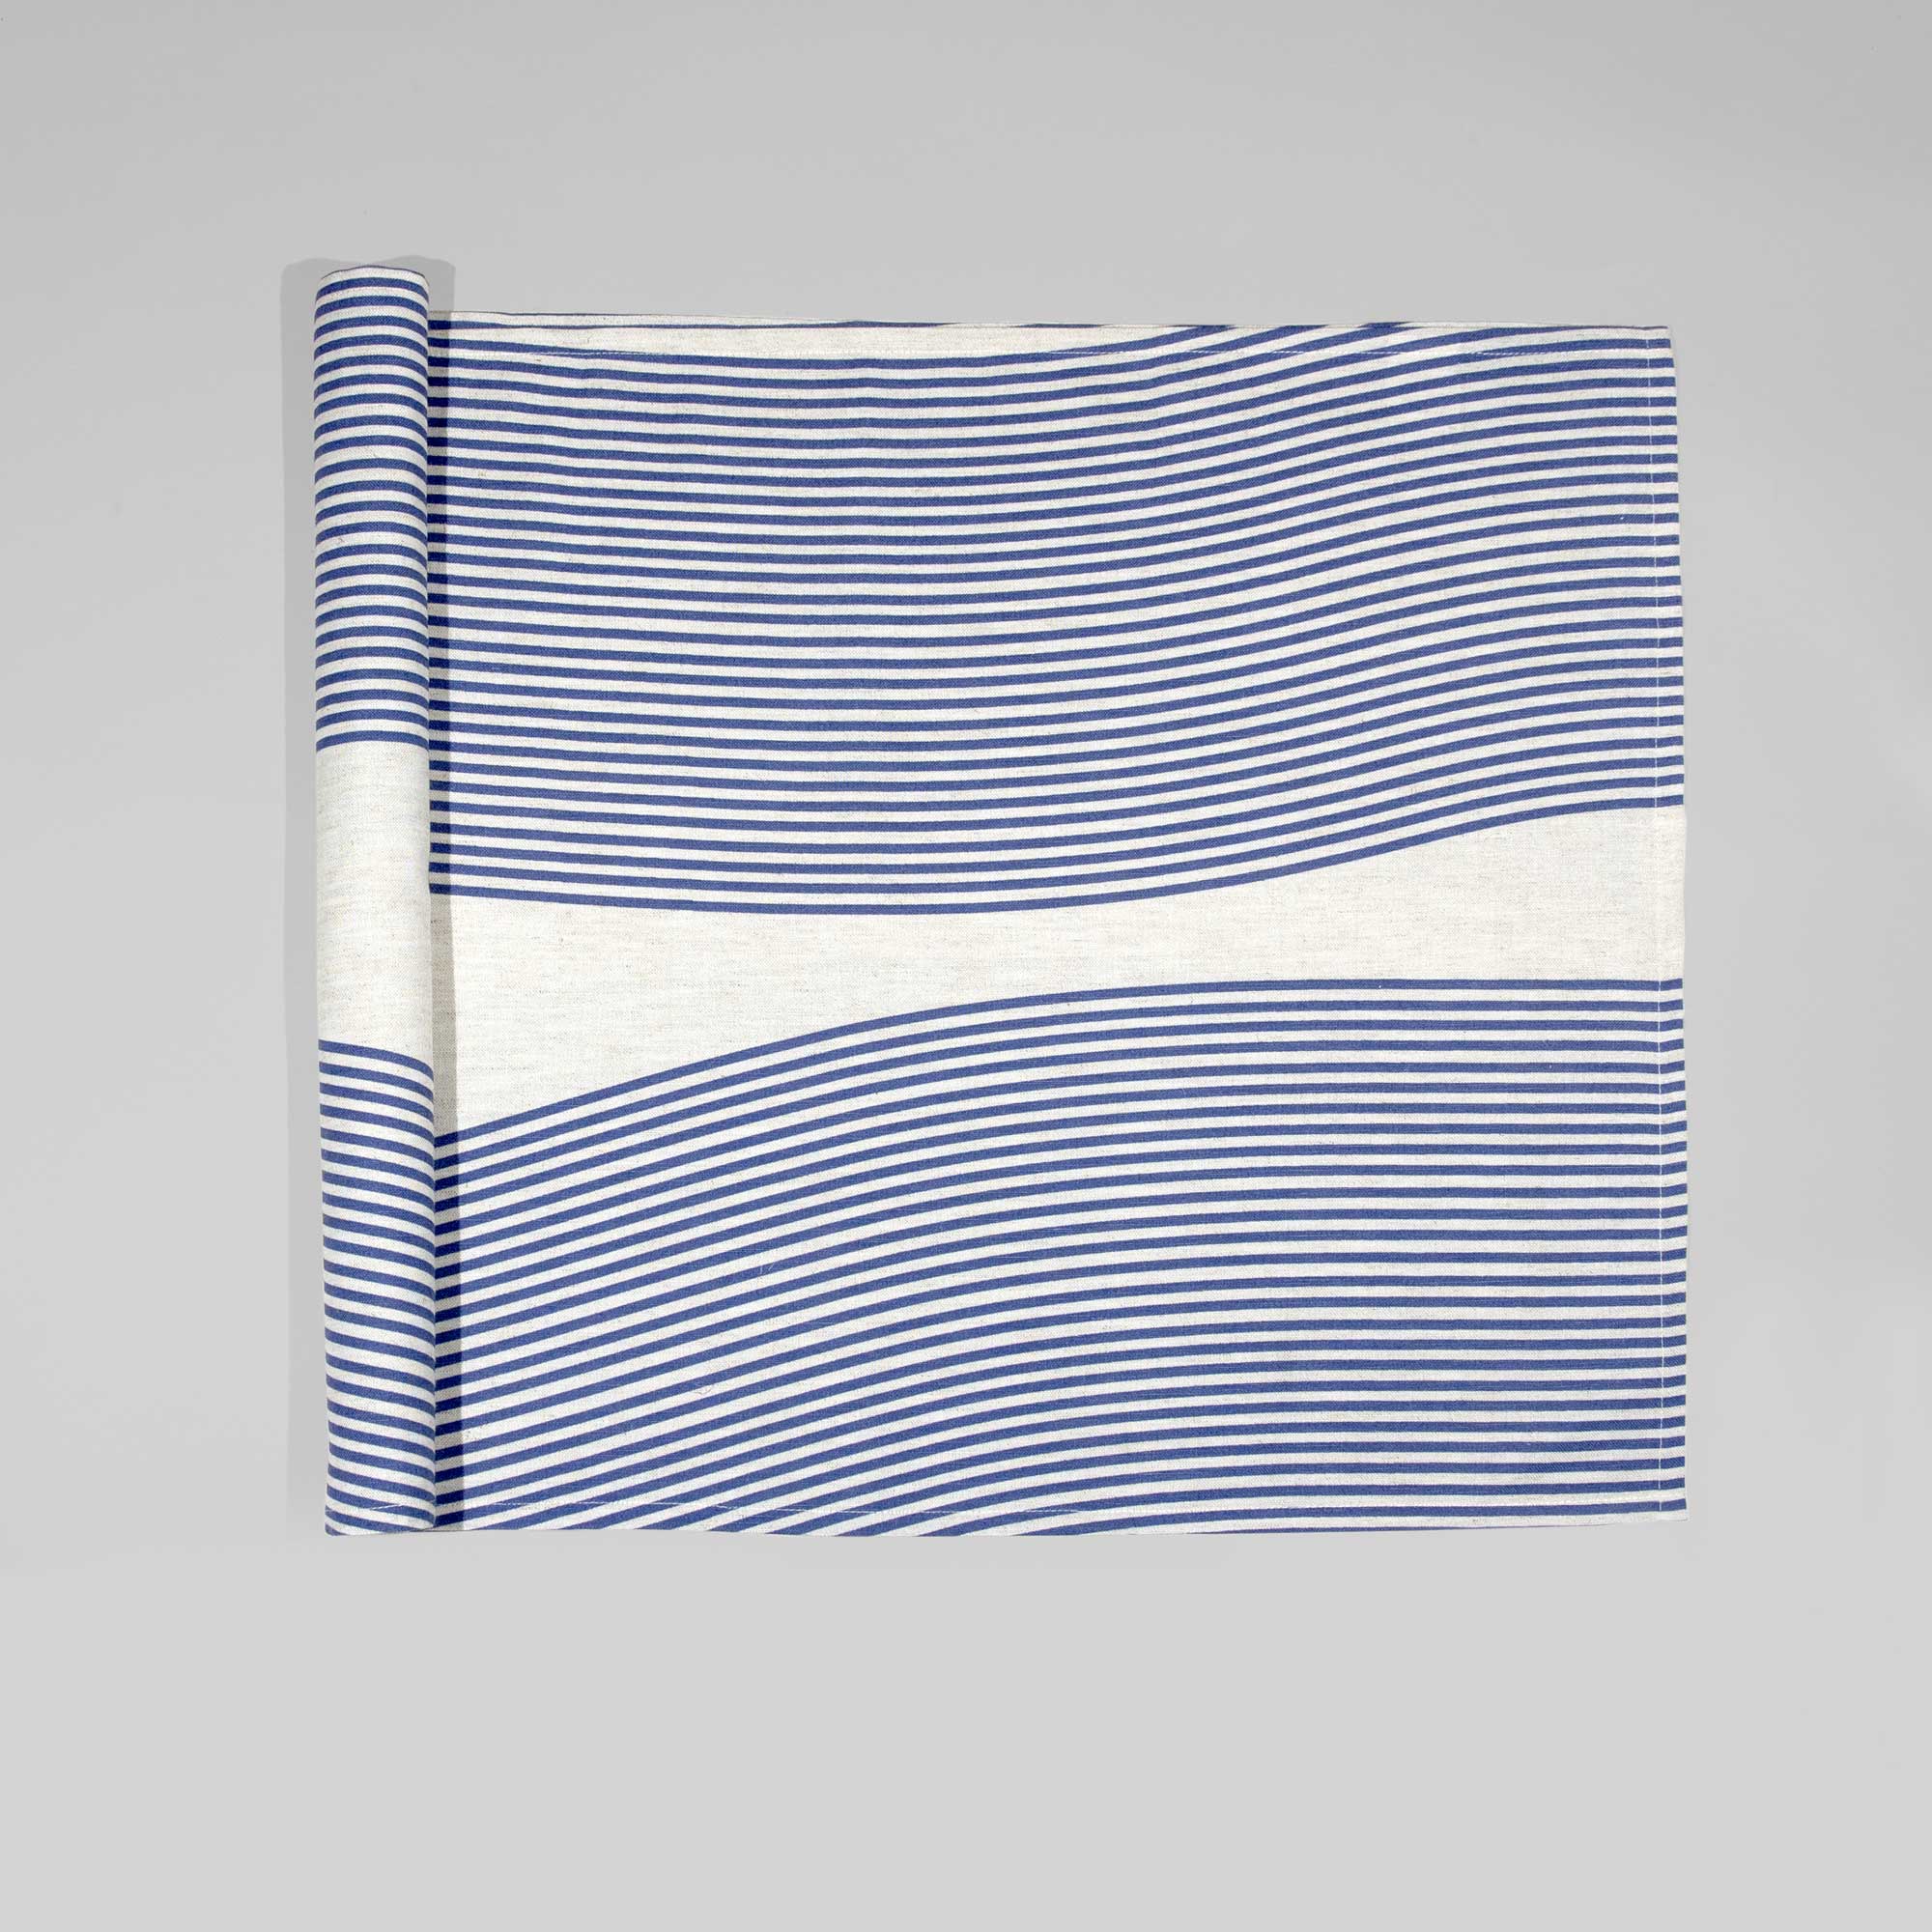 Bordløber, River blue, hør/polyester, design af Anne Rosenberg, RosenbergCph